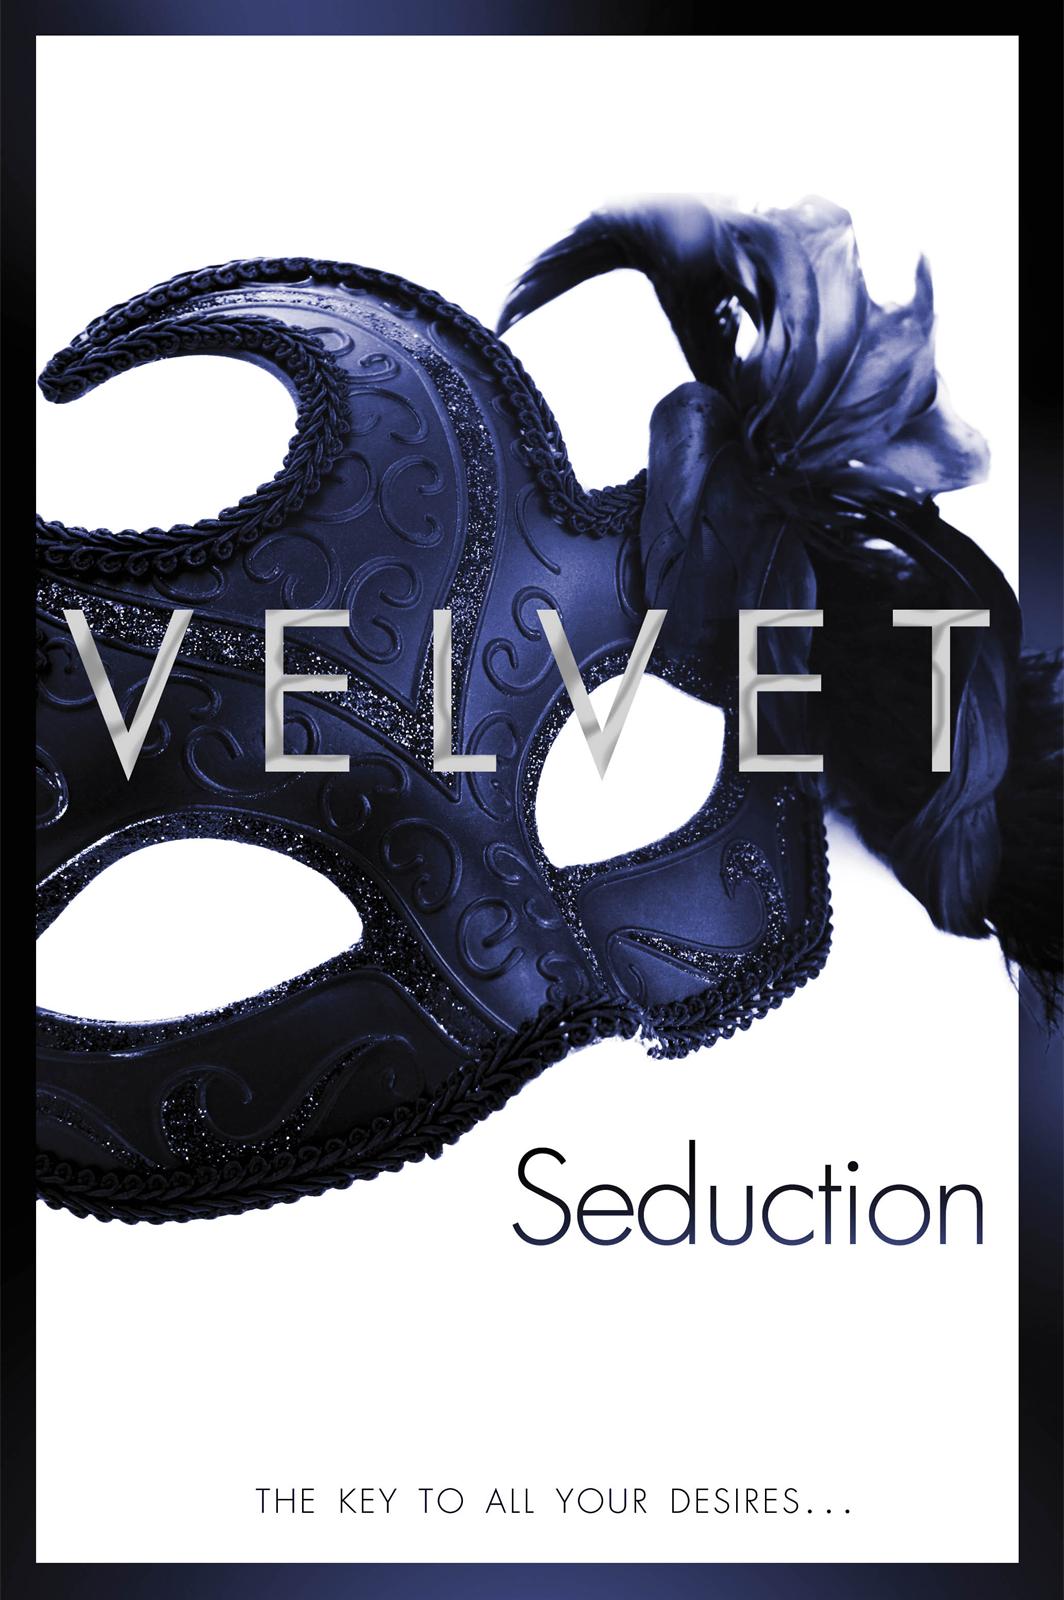 Seduction by Velvet